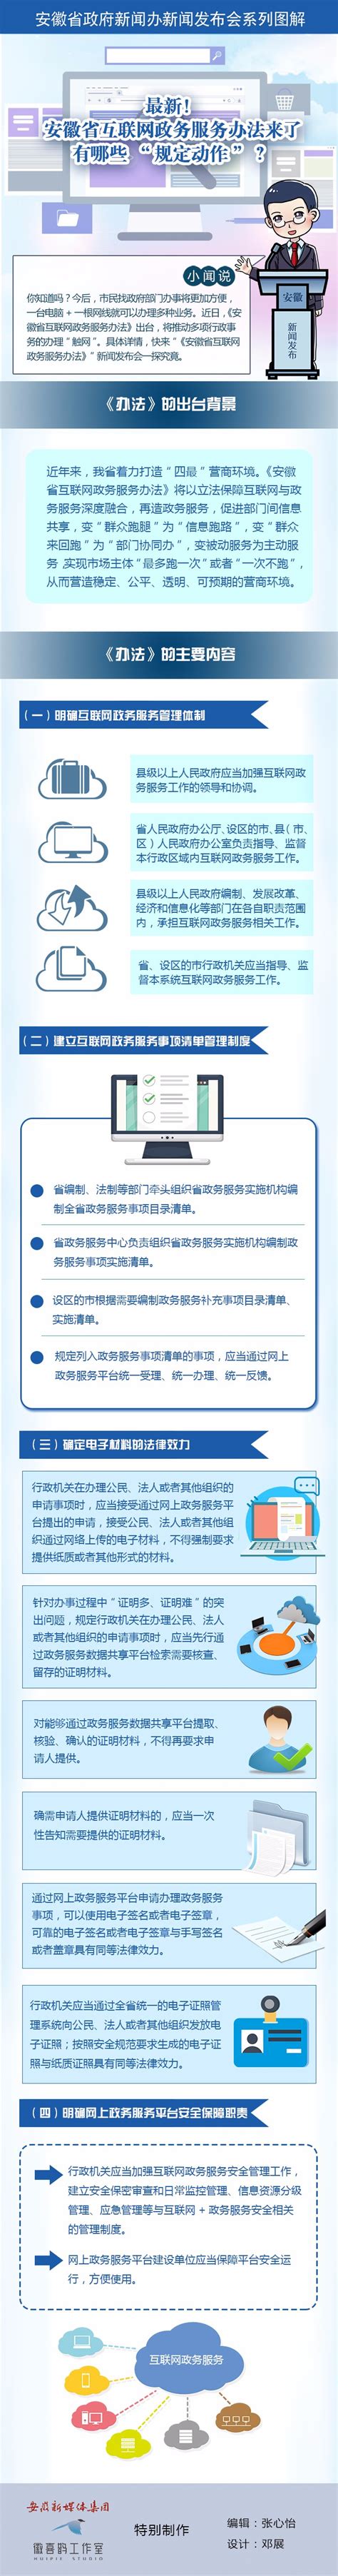 安徽省工业互联网十佳应用案例发布 - 安徽产业网